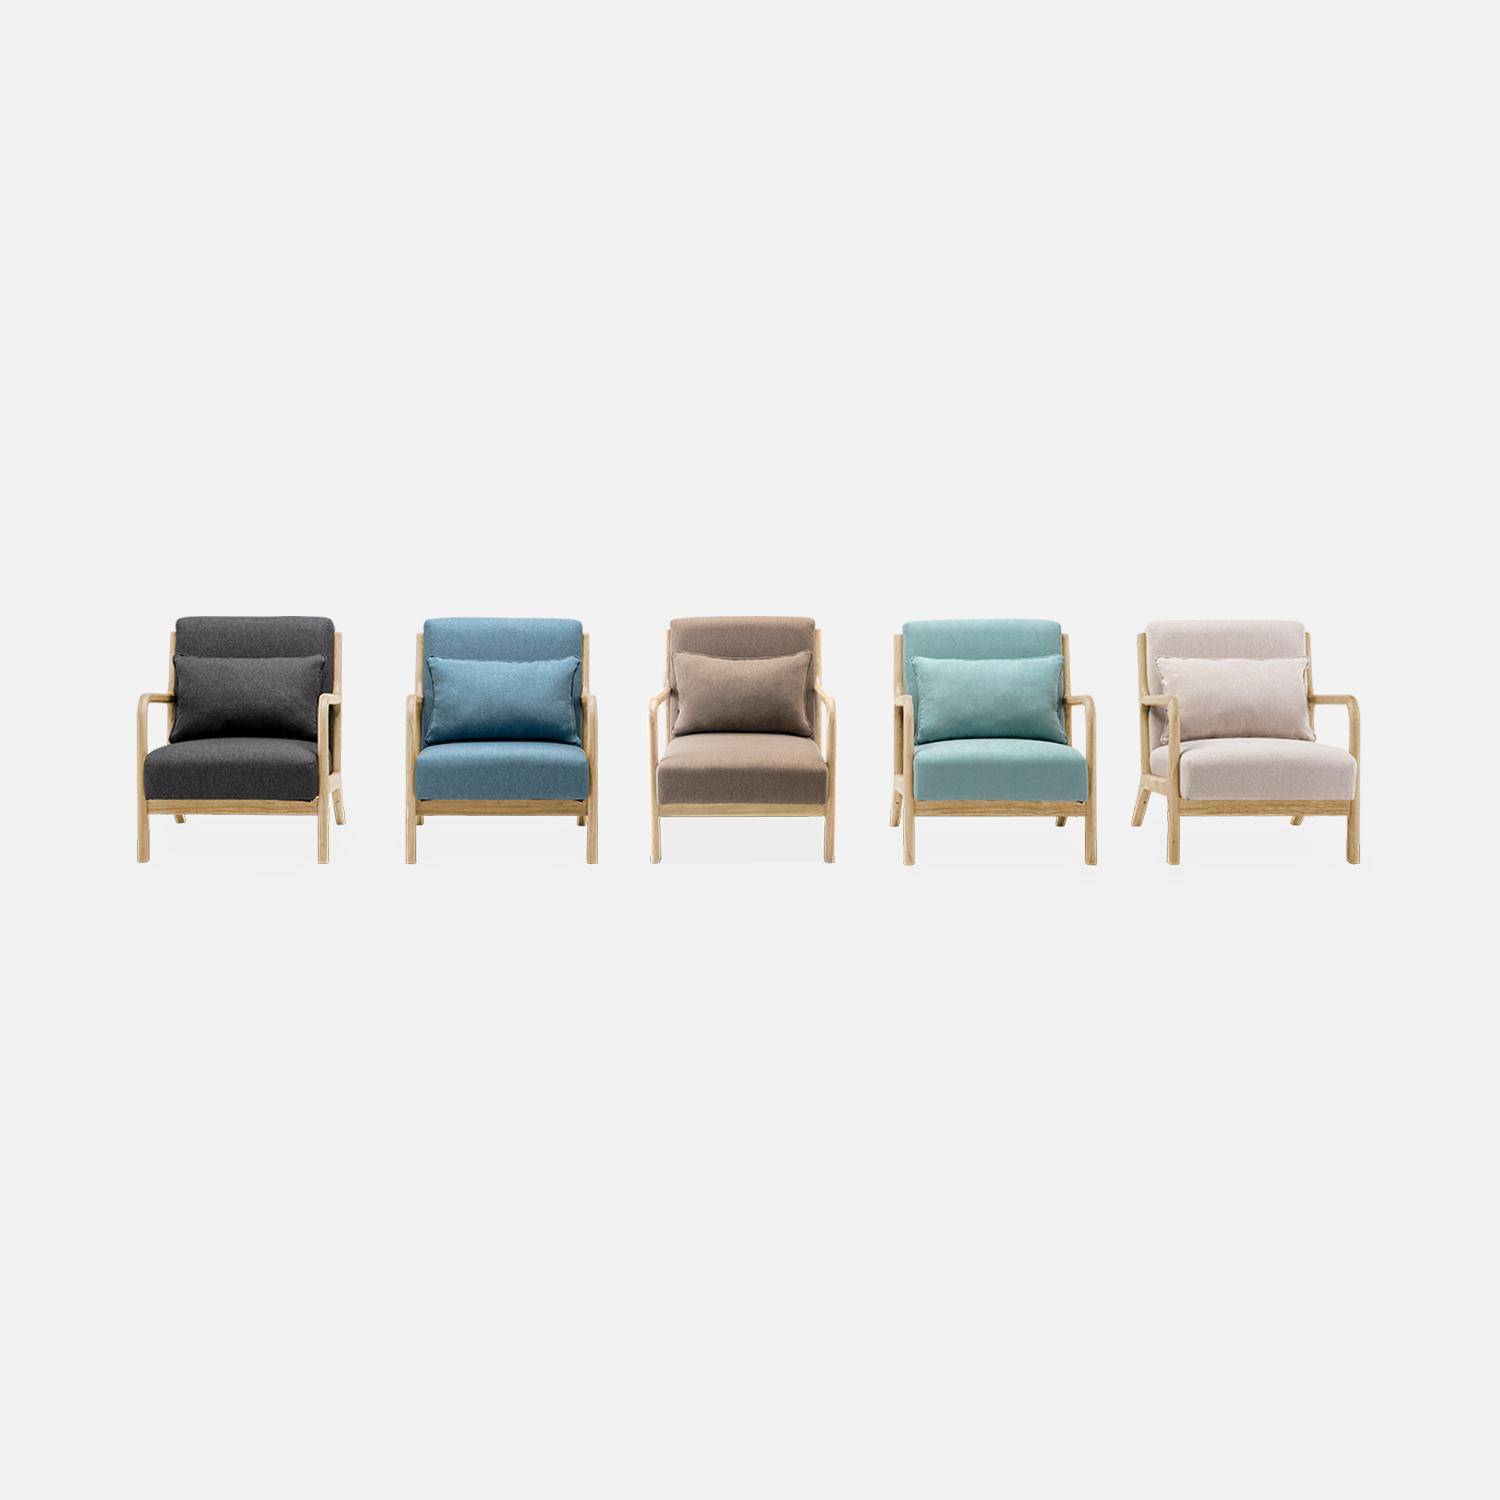 Sillón de diseño en madera y tela, 1 asiento recto fijo, patas de compás escandinavas, asiento cómodo, armazón de madera maciza, azul Photo8